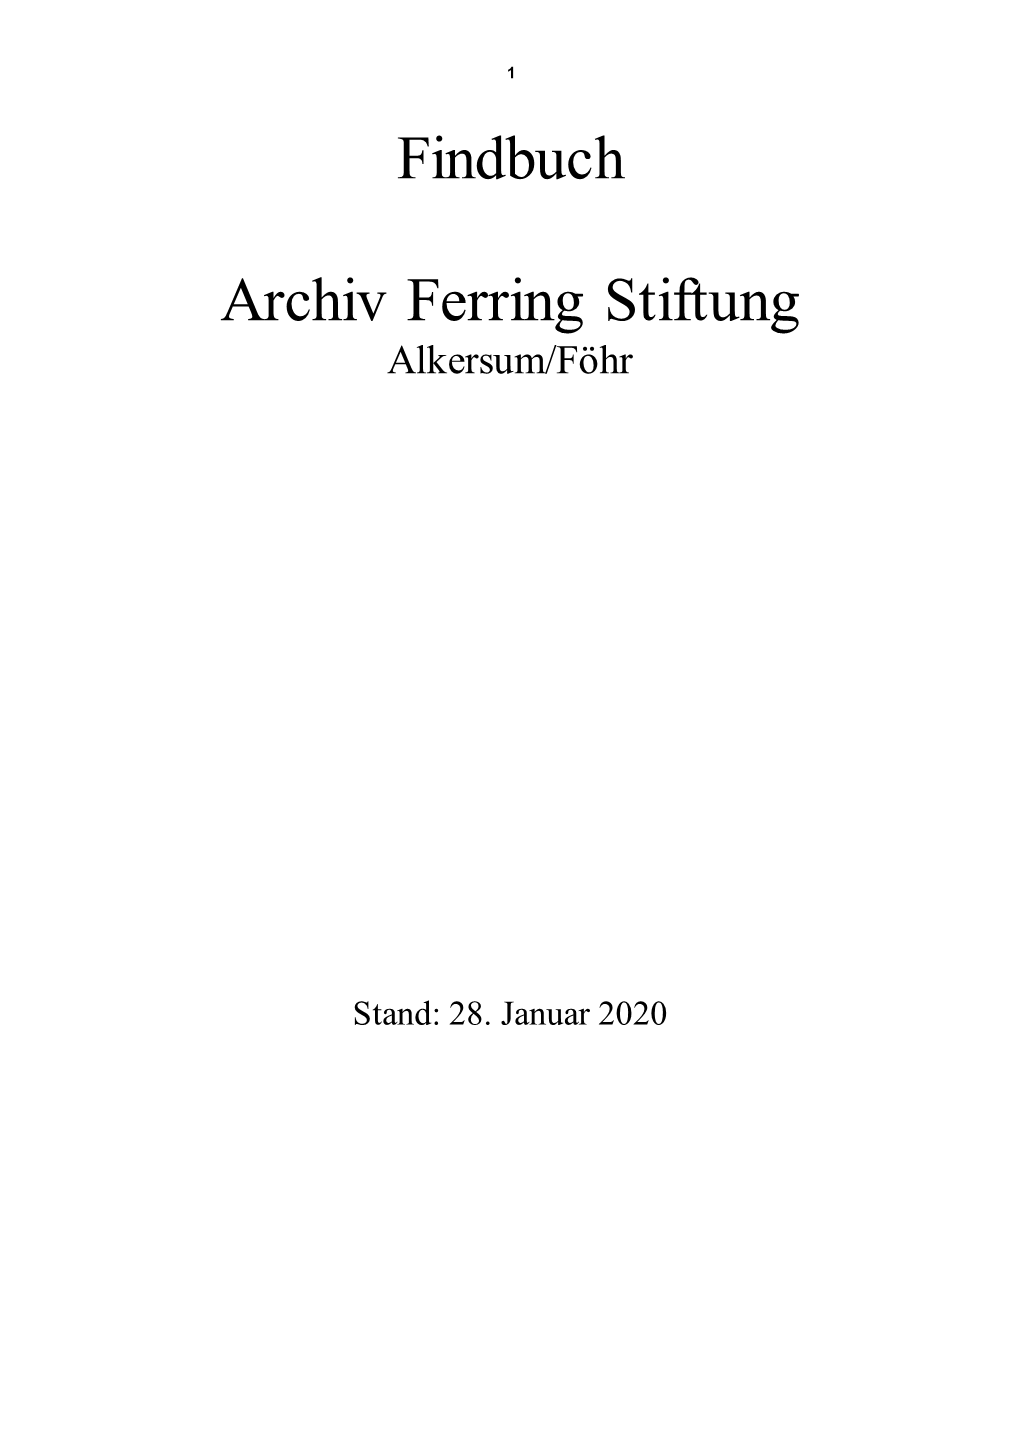 Findbuch Archiv Ferring Stiftung